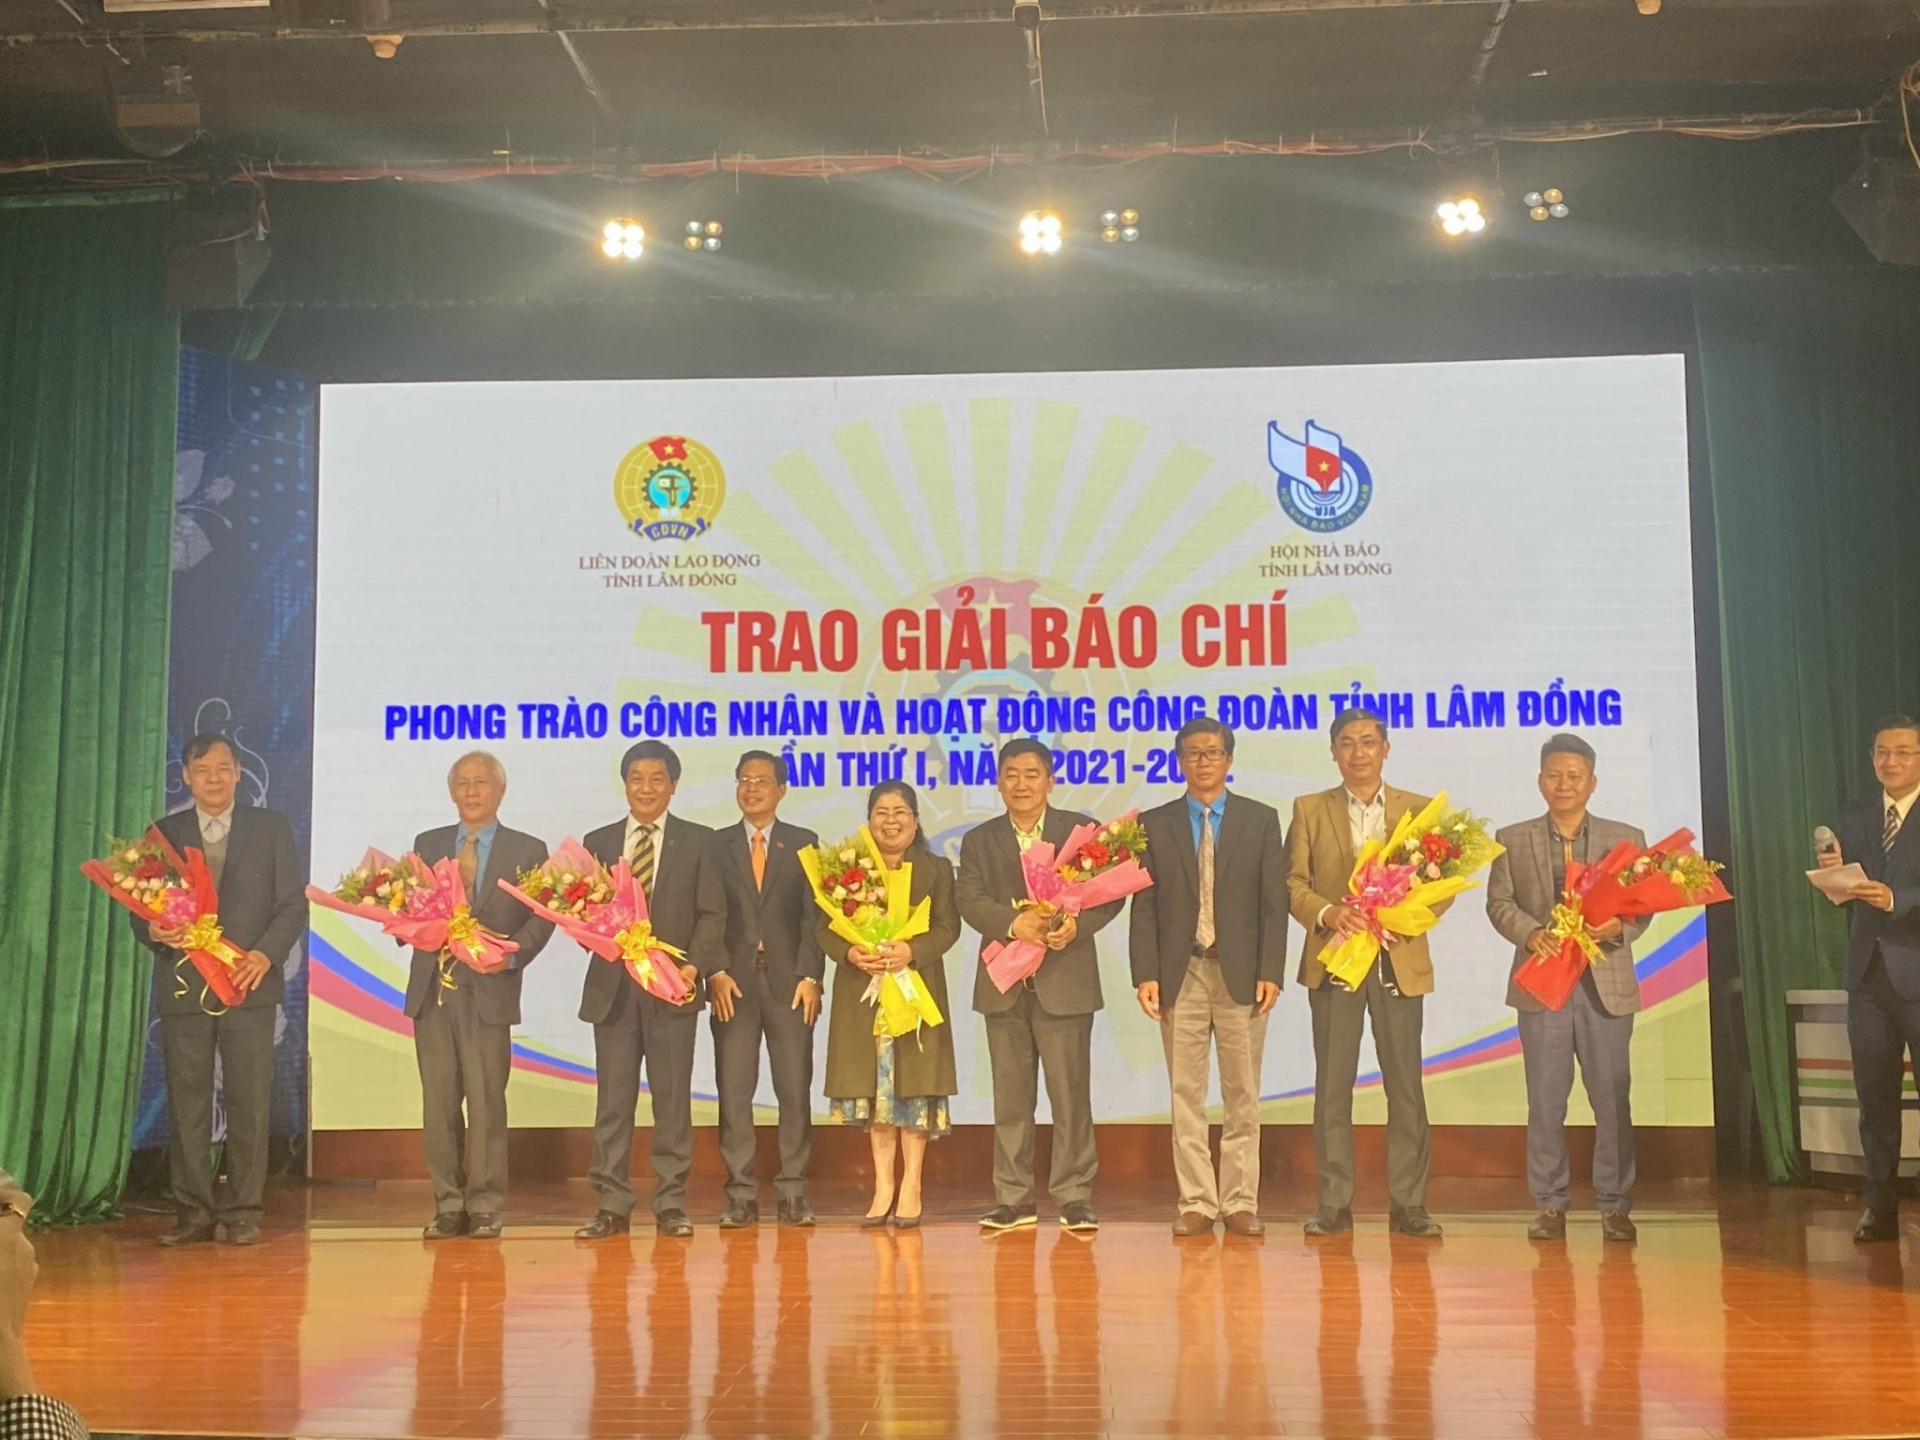 32 tác phẩm đoạt Giải Báo chí phong trào công nhân, Công đoàn tỉnh Lâm Đồng